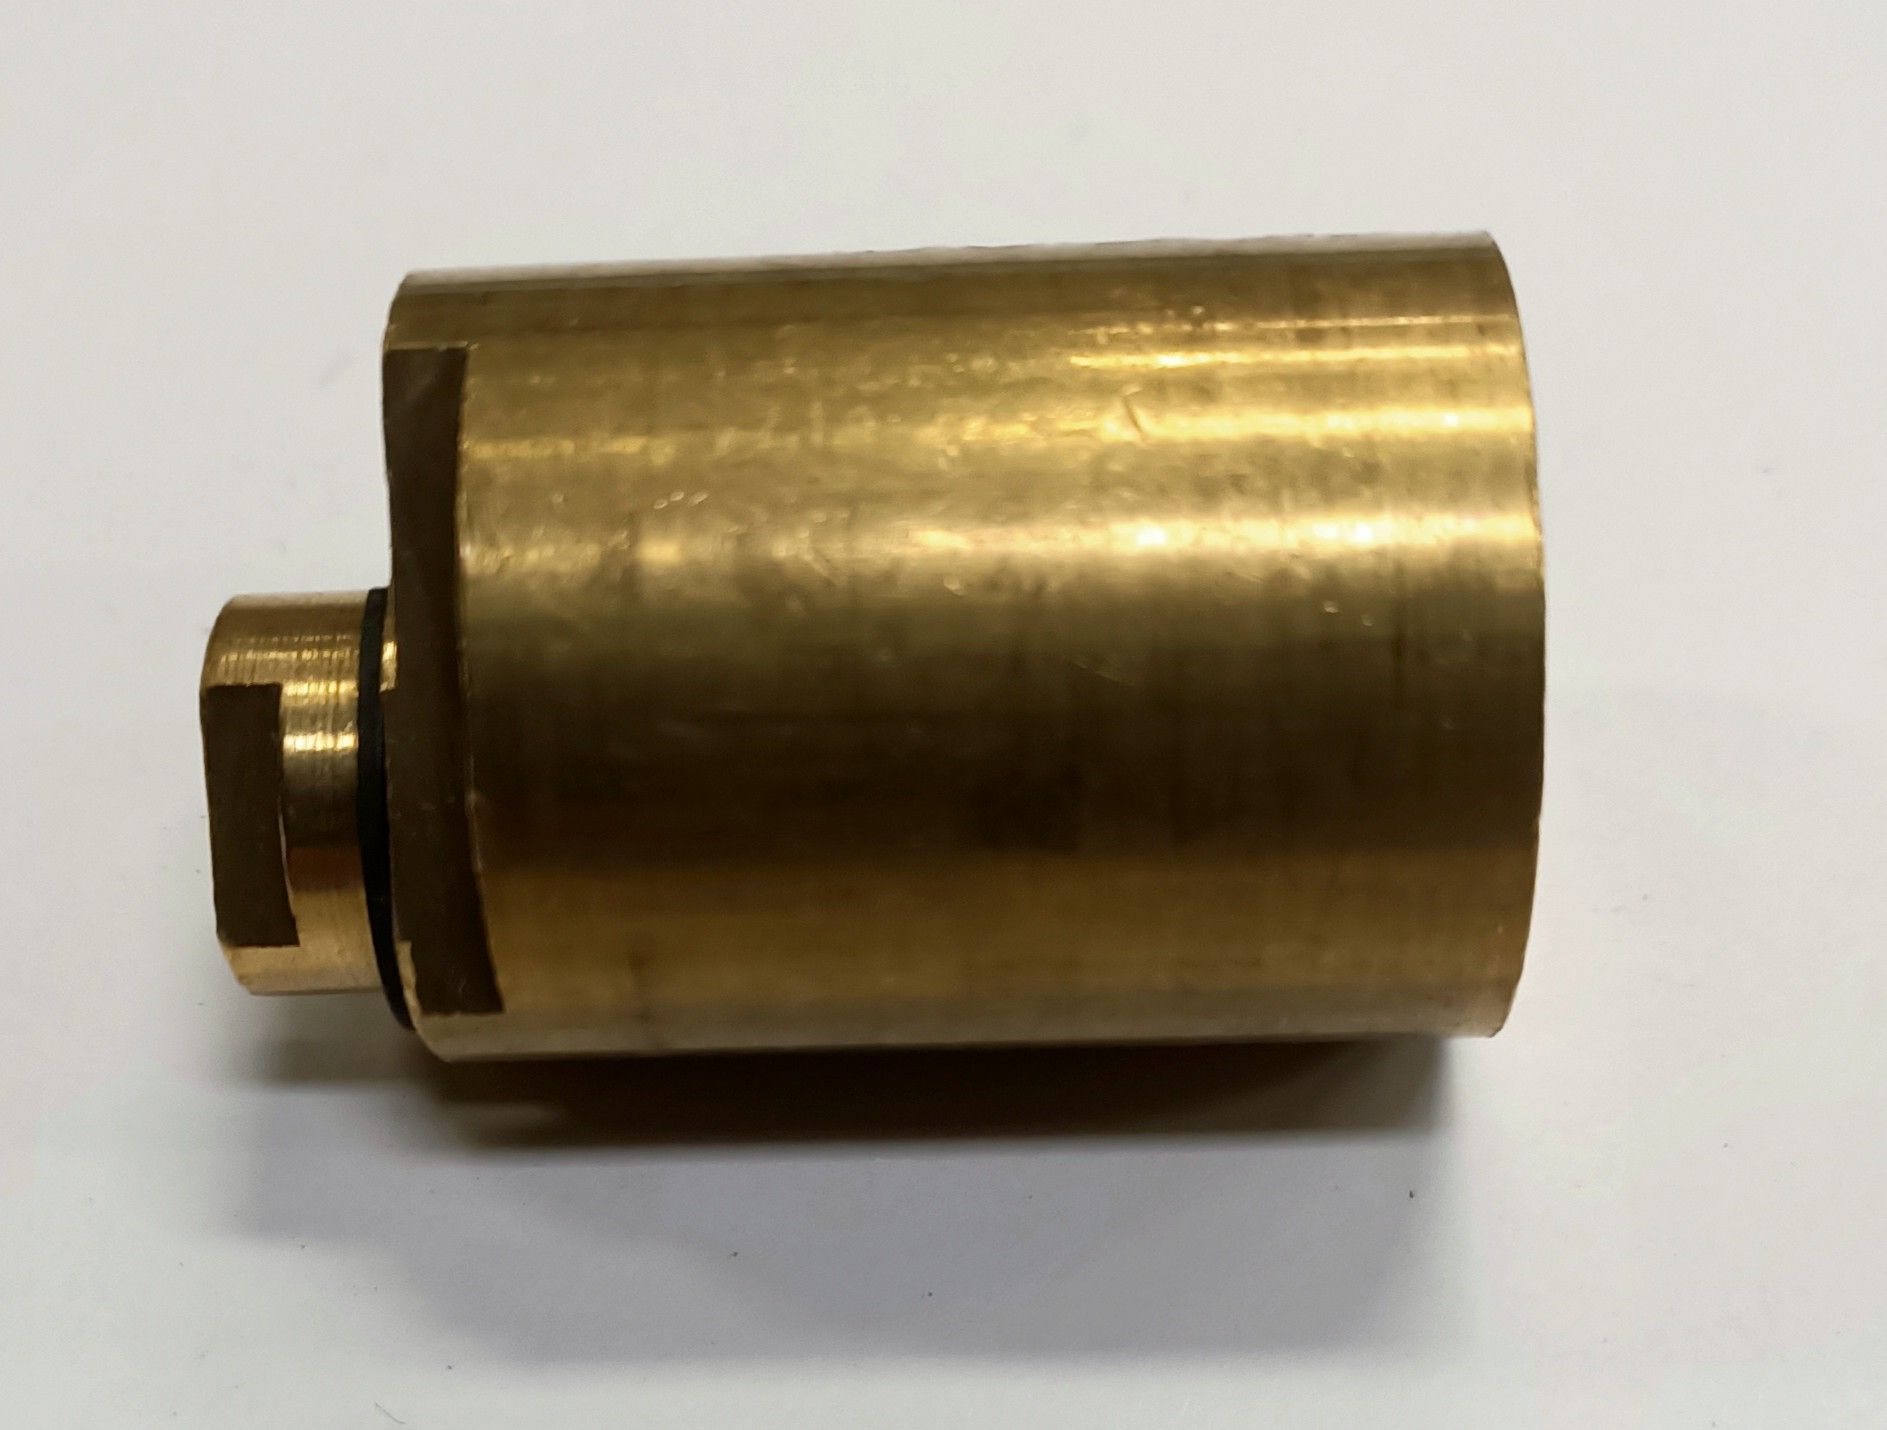 Cilindro tondo ricambio per serrature FASEM 109 da basculante mm 25 x 30